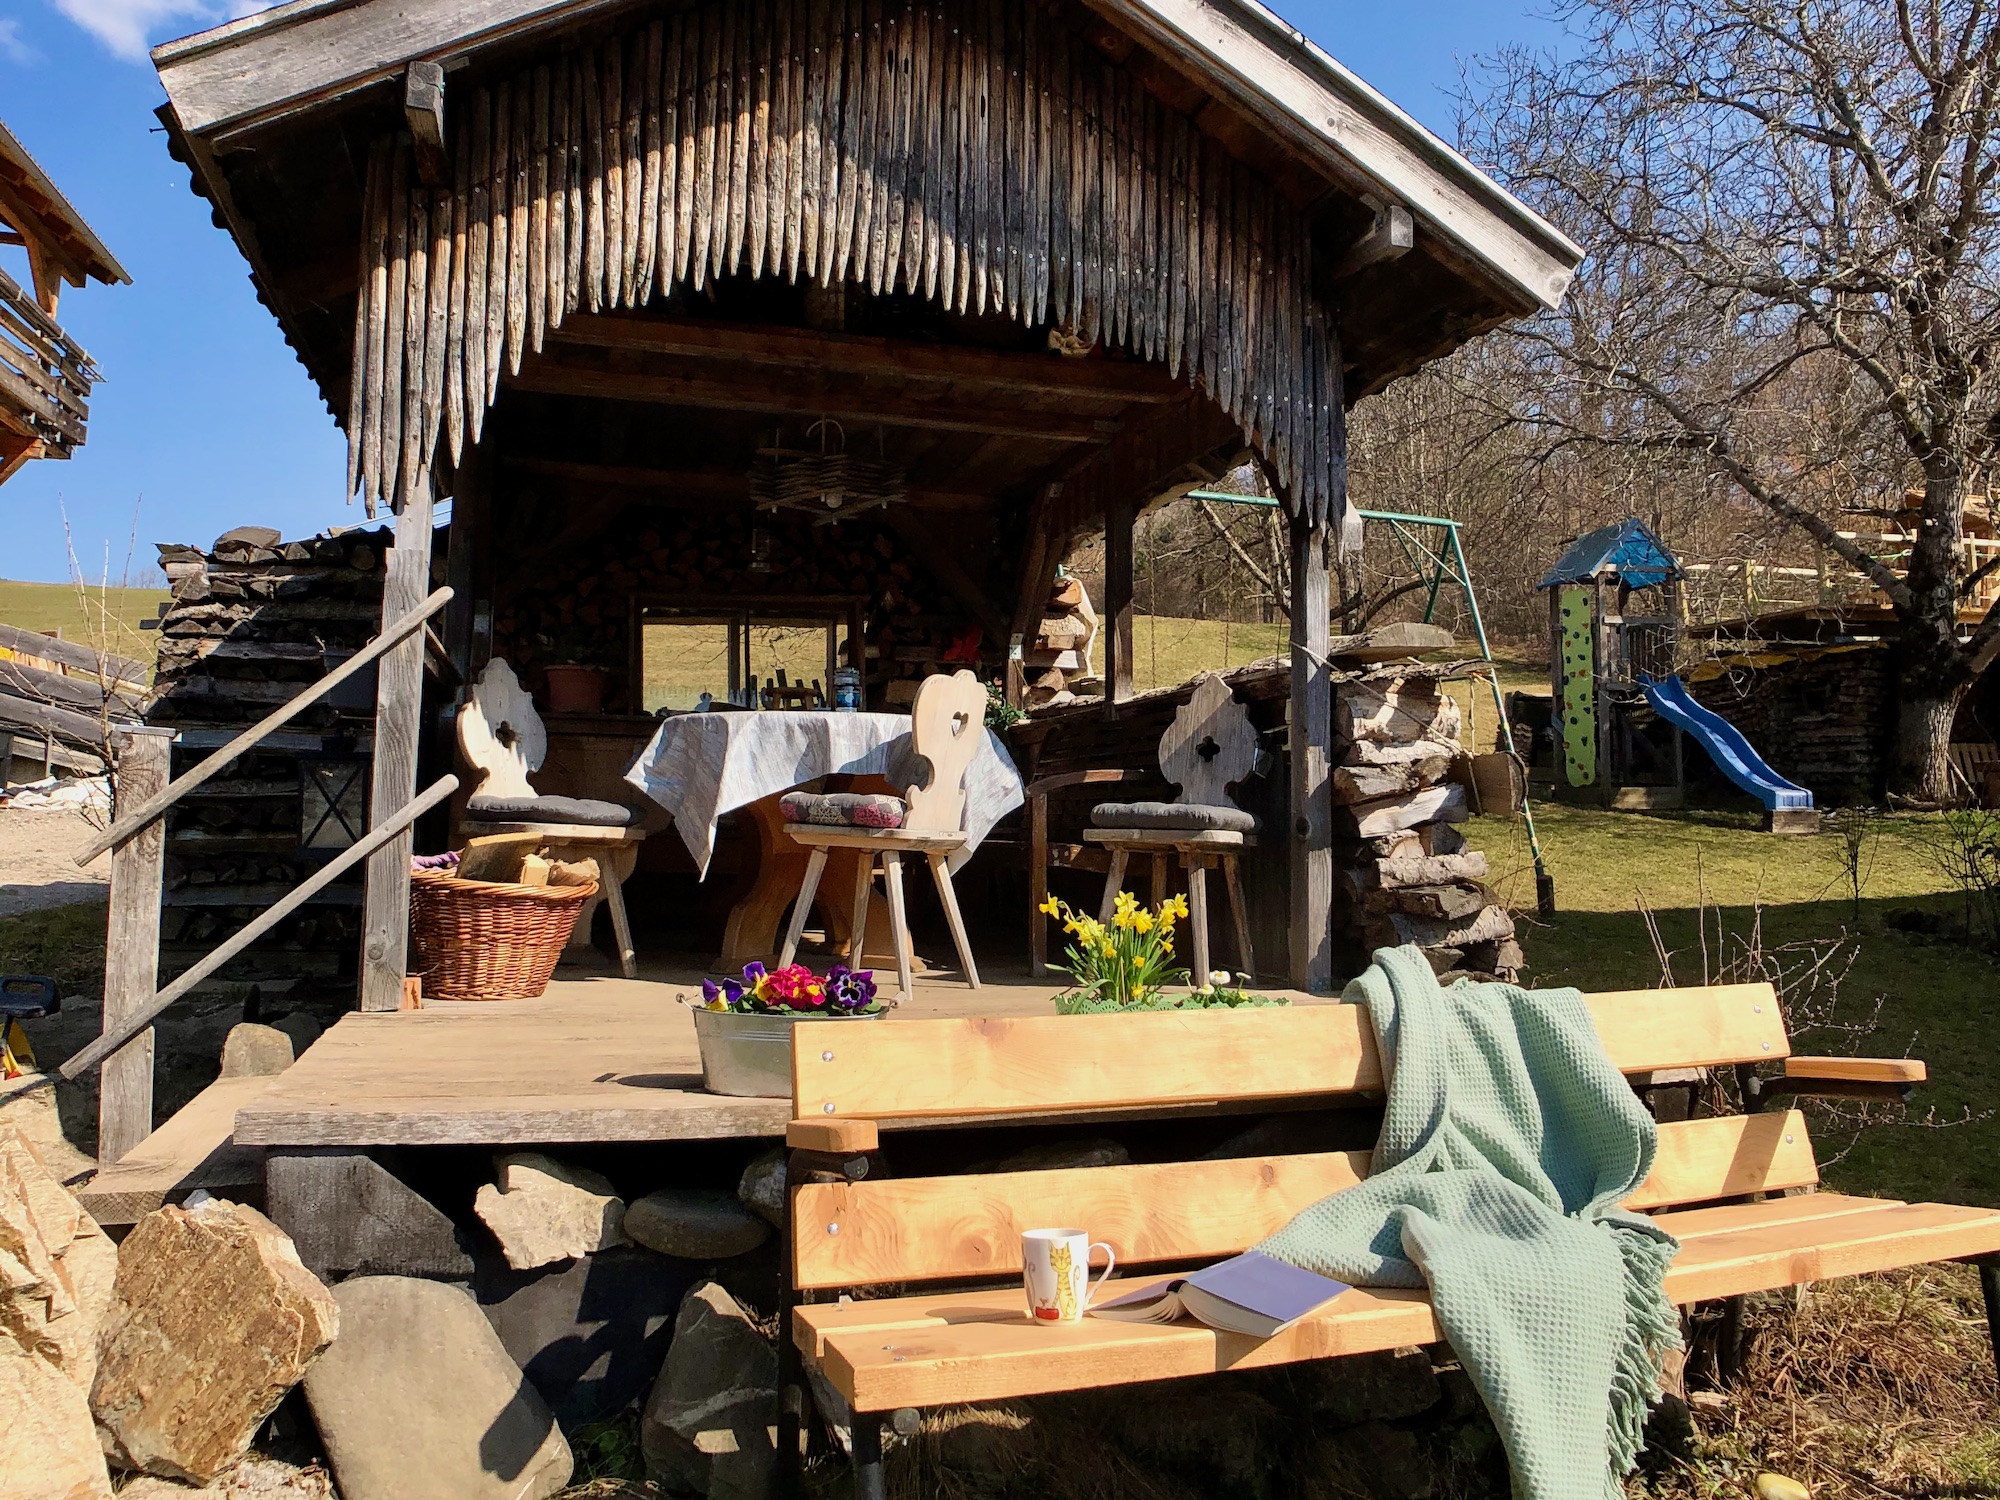 Gemütliche Grillhütte im Garten mit Spielplatz im Hintergrund